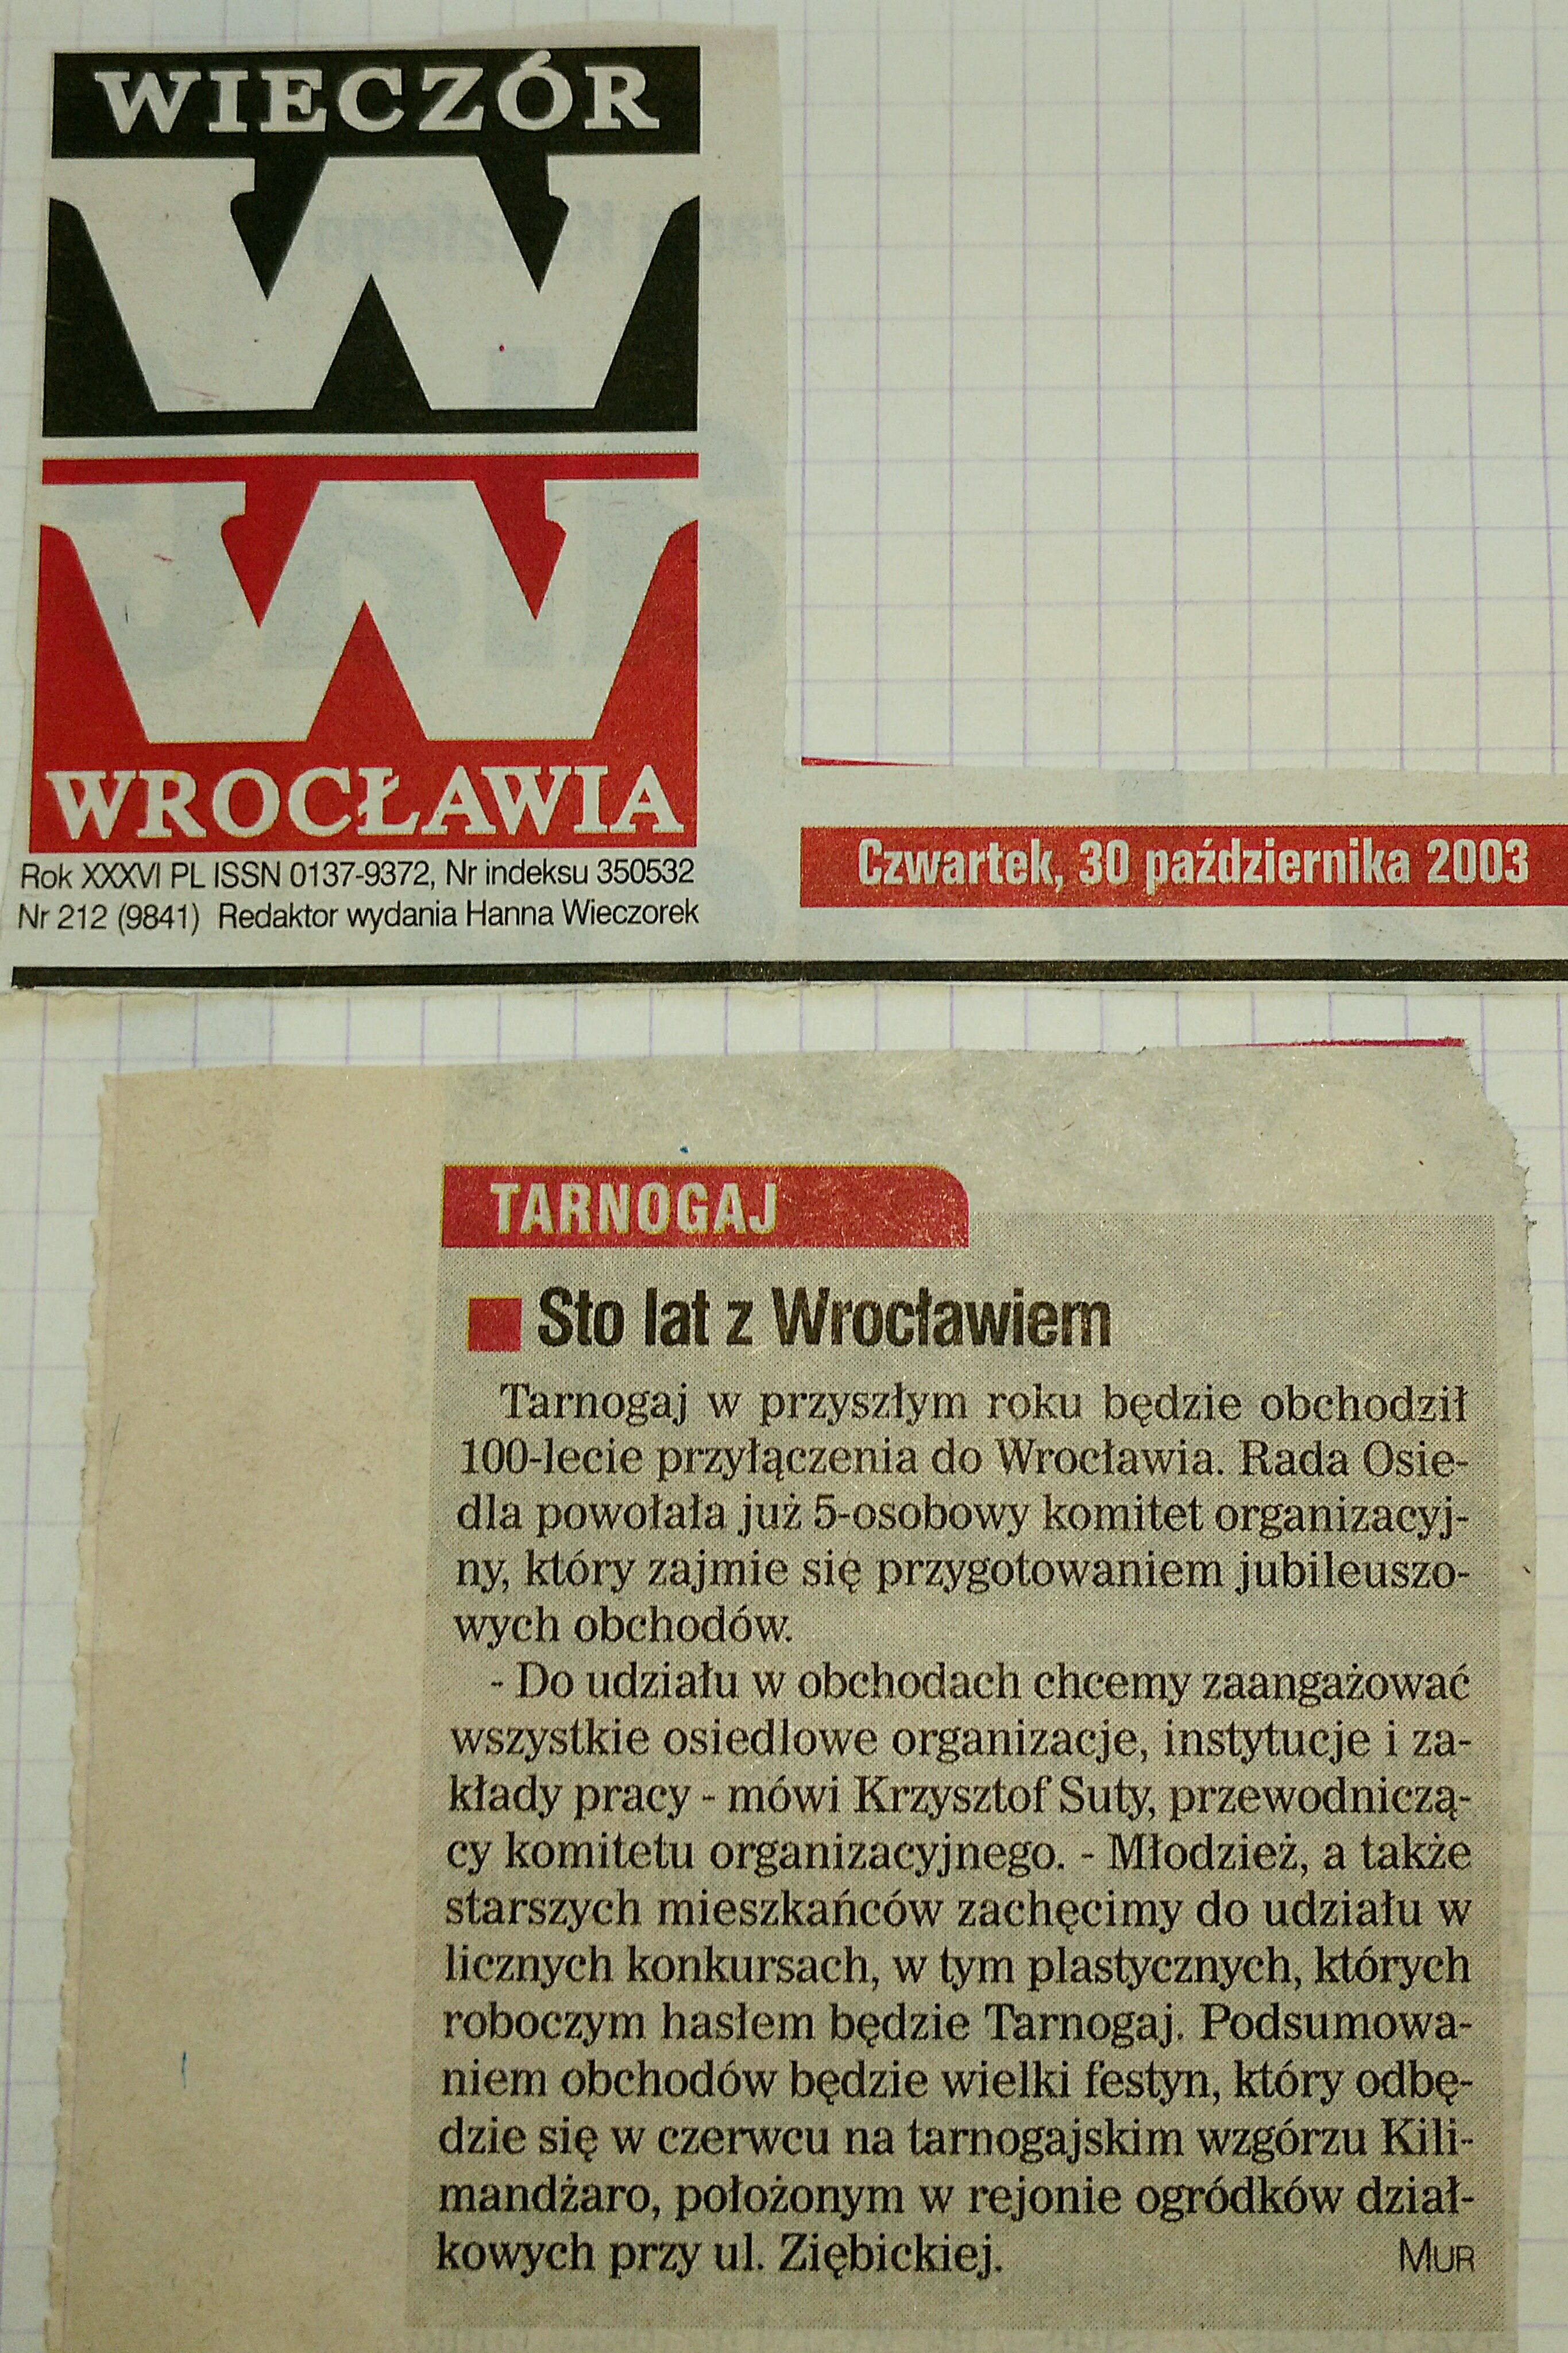 16 30 pazdziernika 2003 Wieczór Wrocławia